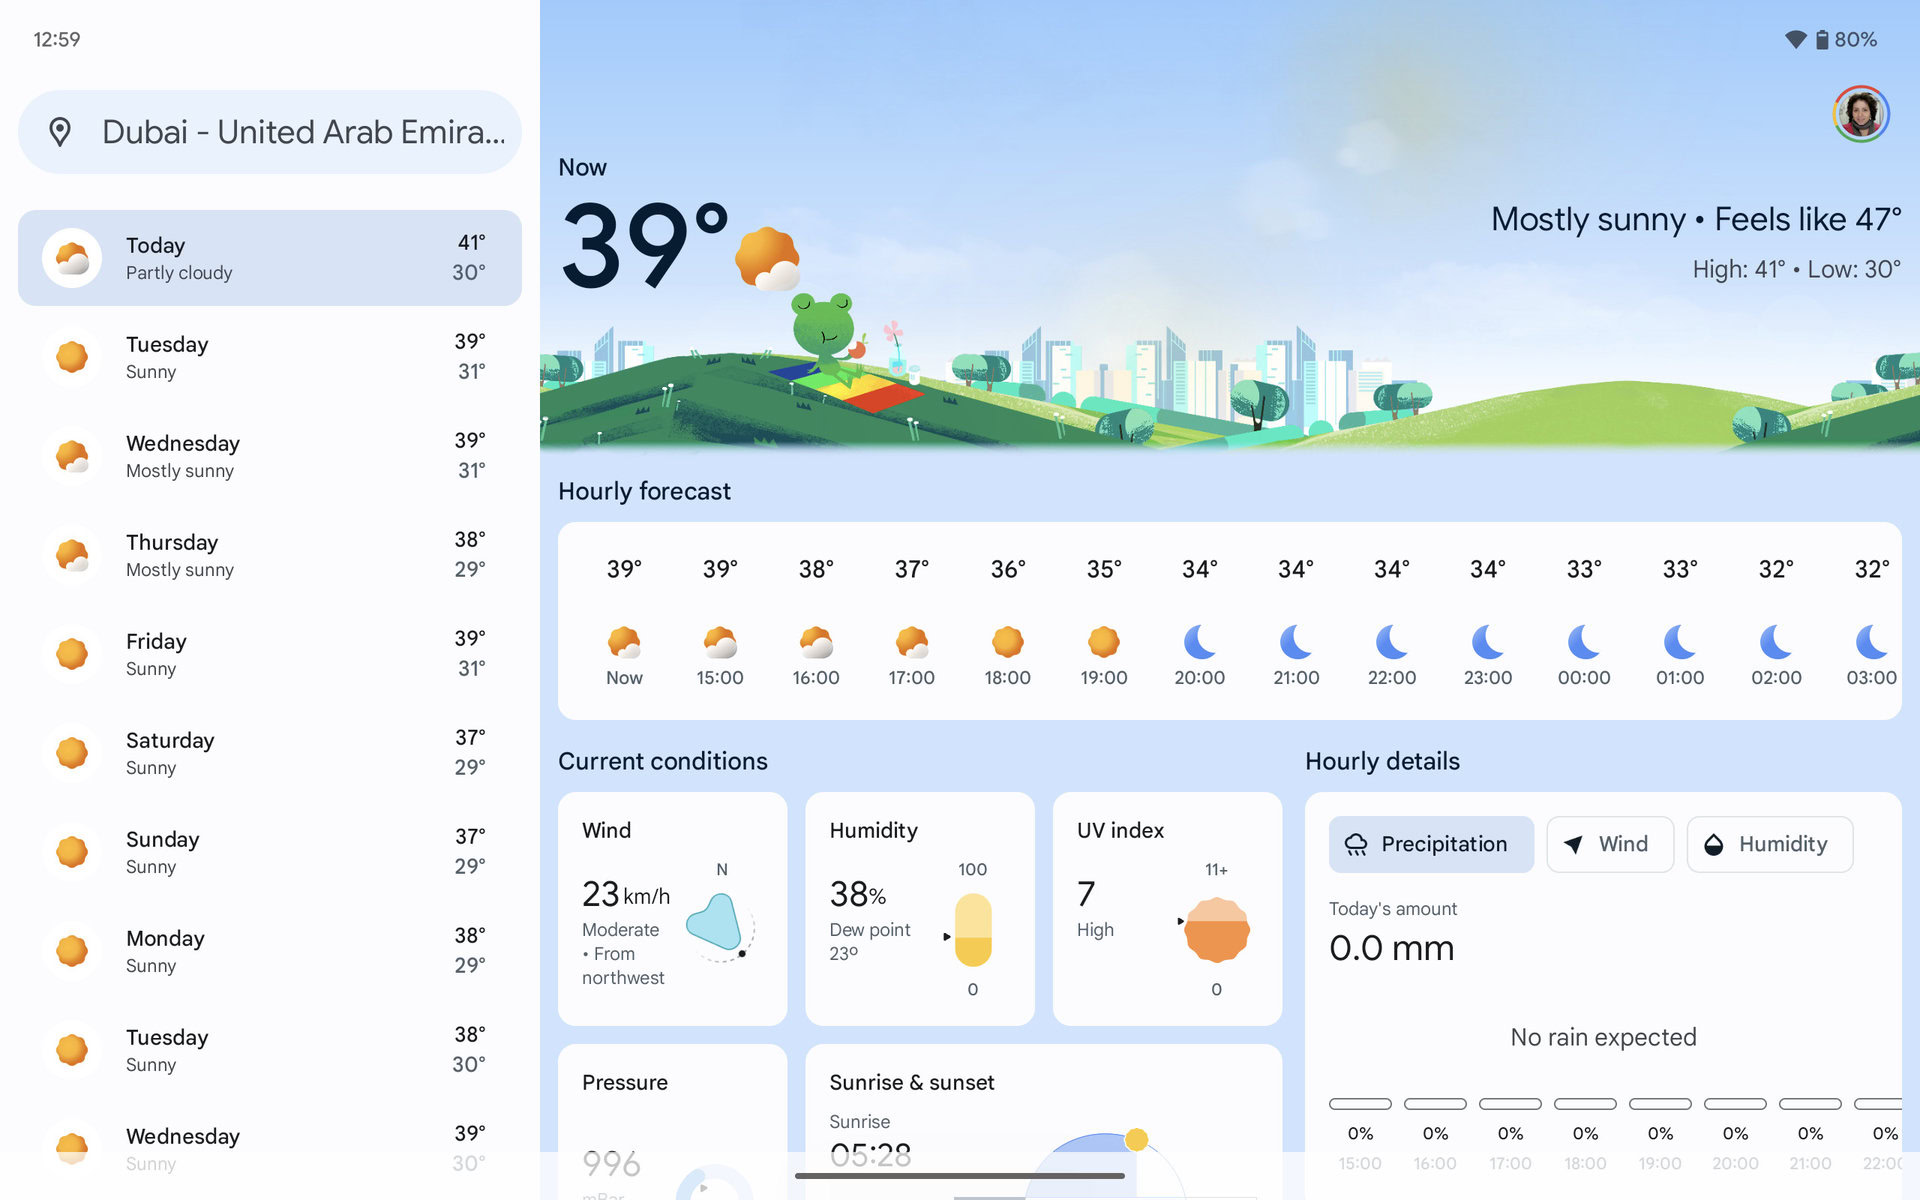 Google añade información sobre la calidad del aire al mapa meteorológico en los resultados de búsqueda